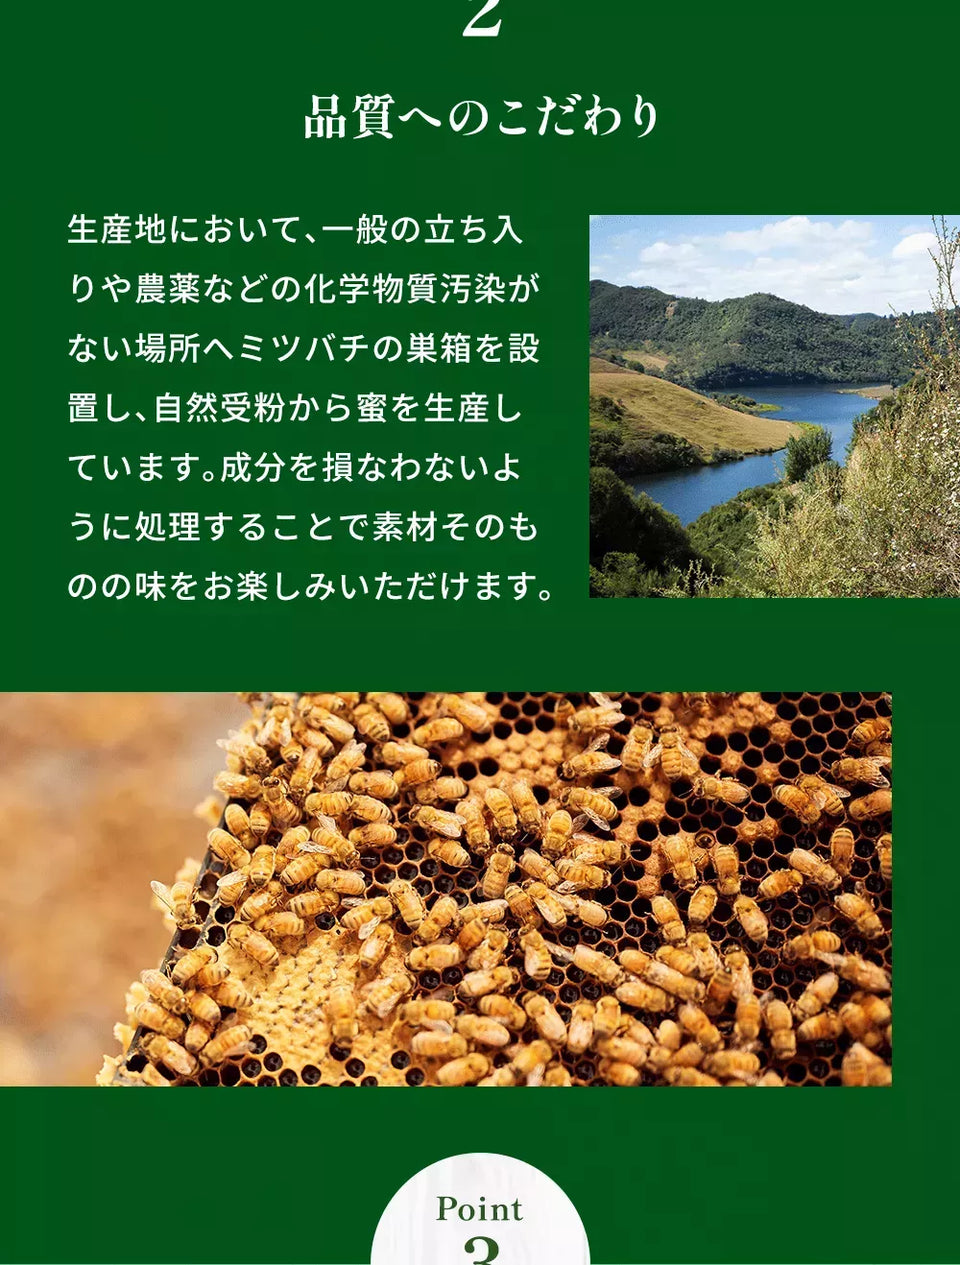 Point 2 品質へのこだわり 生産地において、一般の立ち入りや農薬などの化学物質汚染がない場所へミツバチの巣箱を設置し、自然受粉から蜜を生産しています。成分を損なわないように処理することで素材そのものの味をお楽しみいただけます。